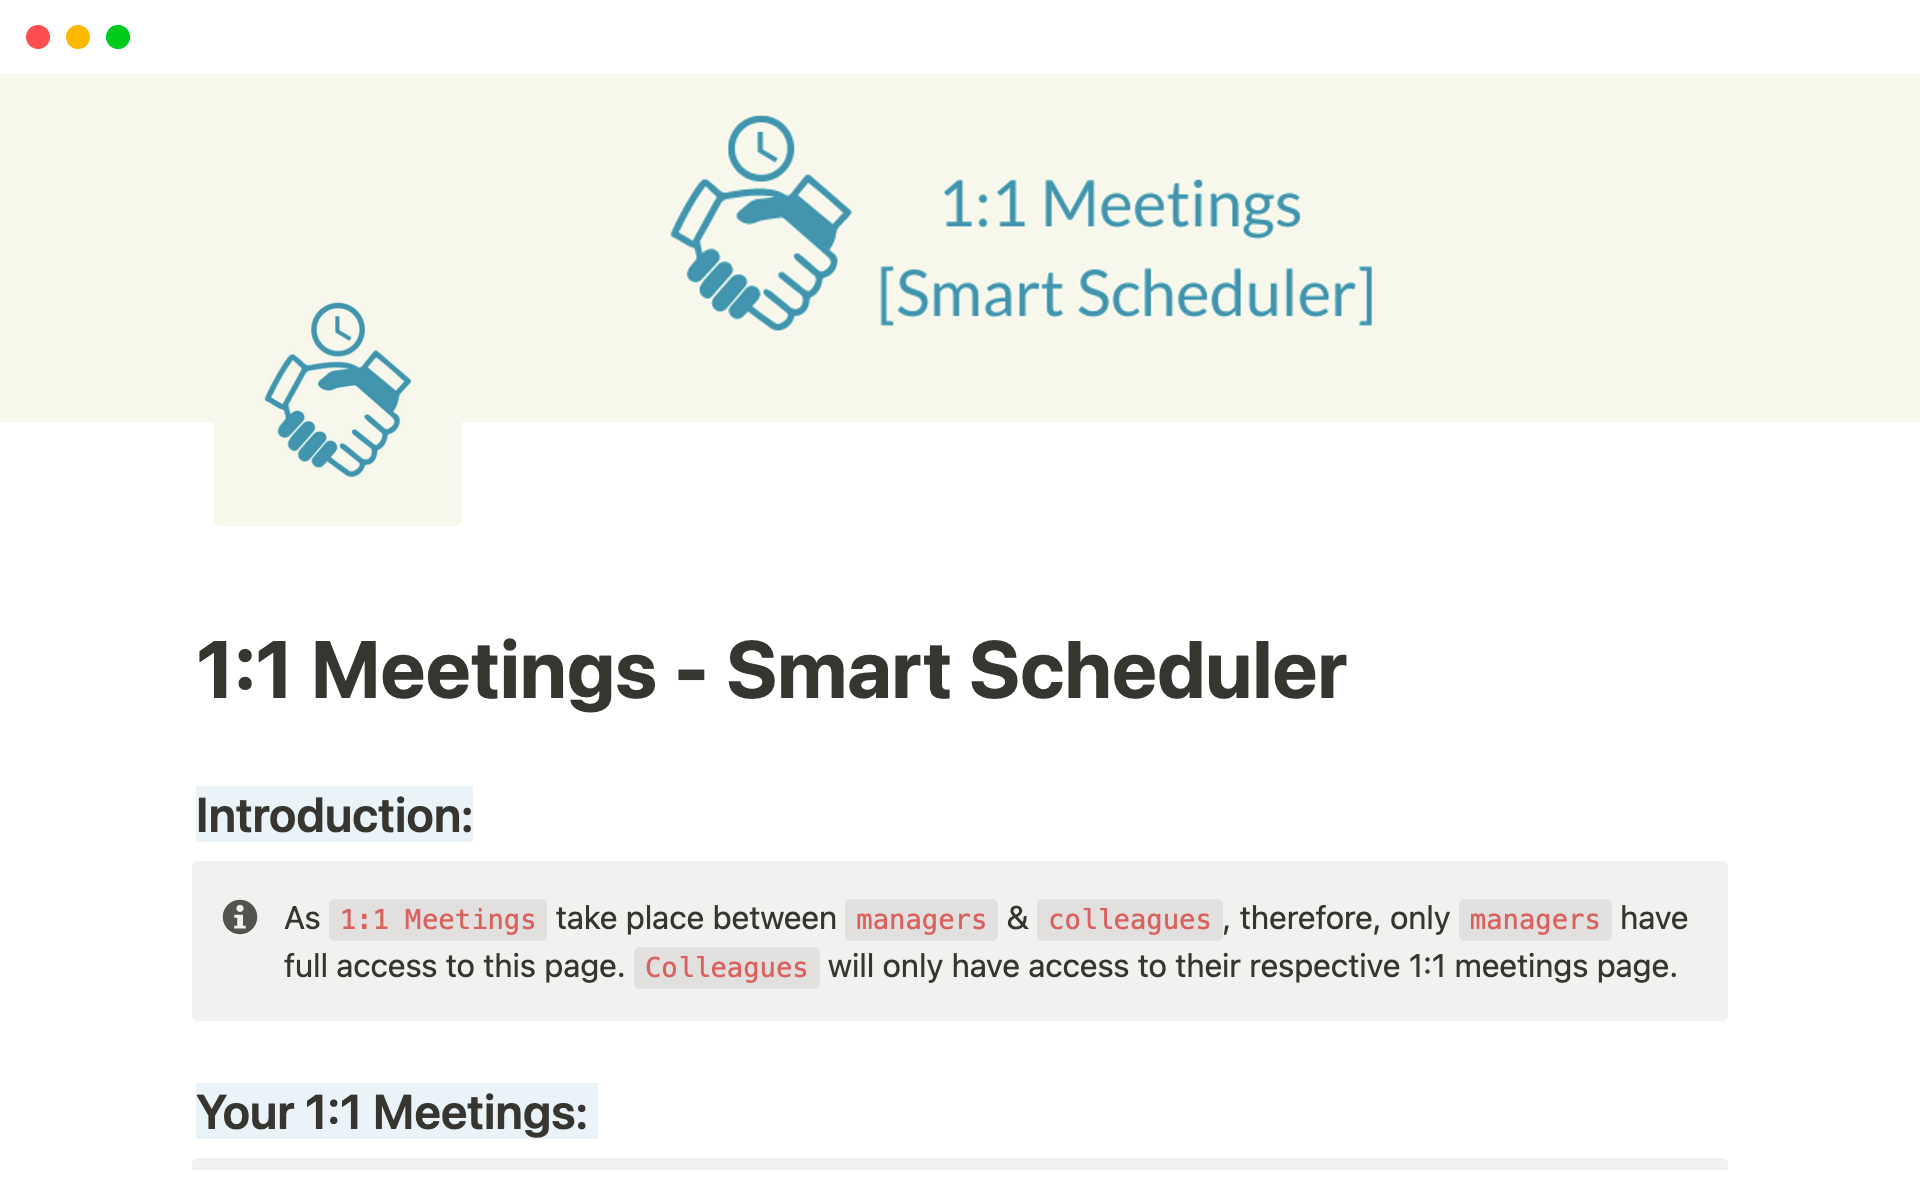 En förhandsgranskning av mallen för 1:1 Meetings - Smart Scheduler